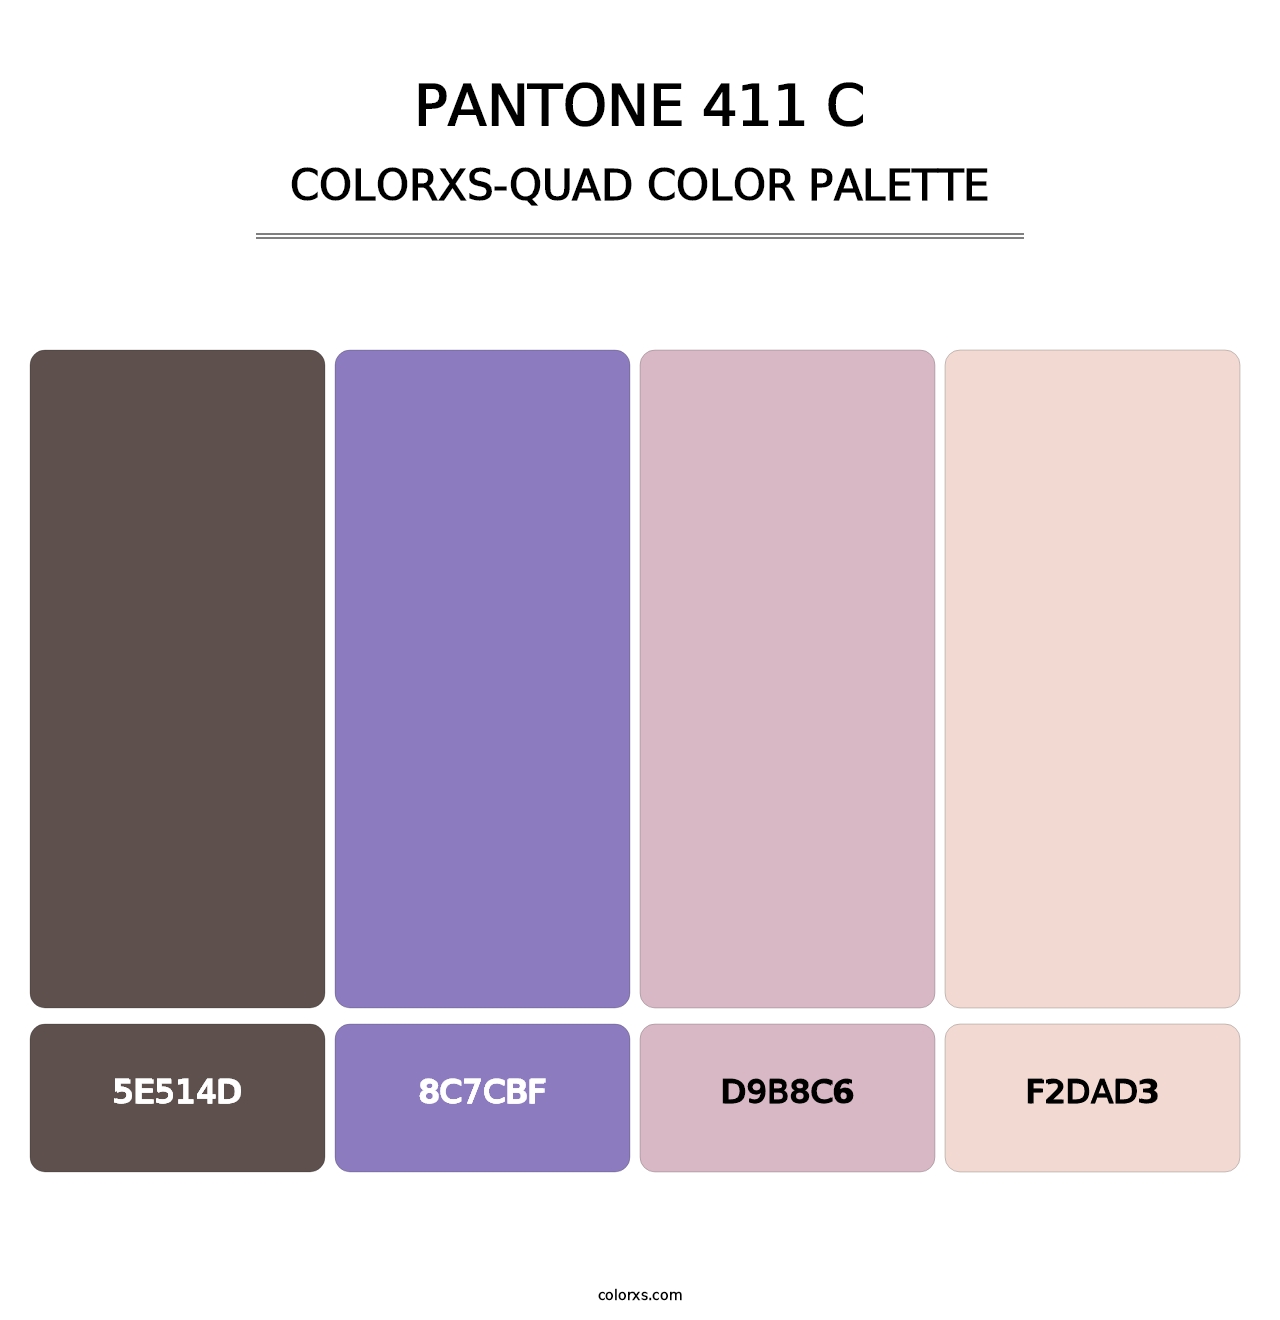 PANTONE 411 C - Colorxs Quad Palette